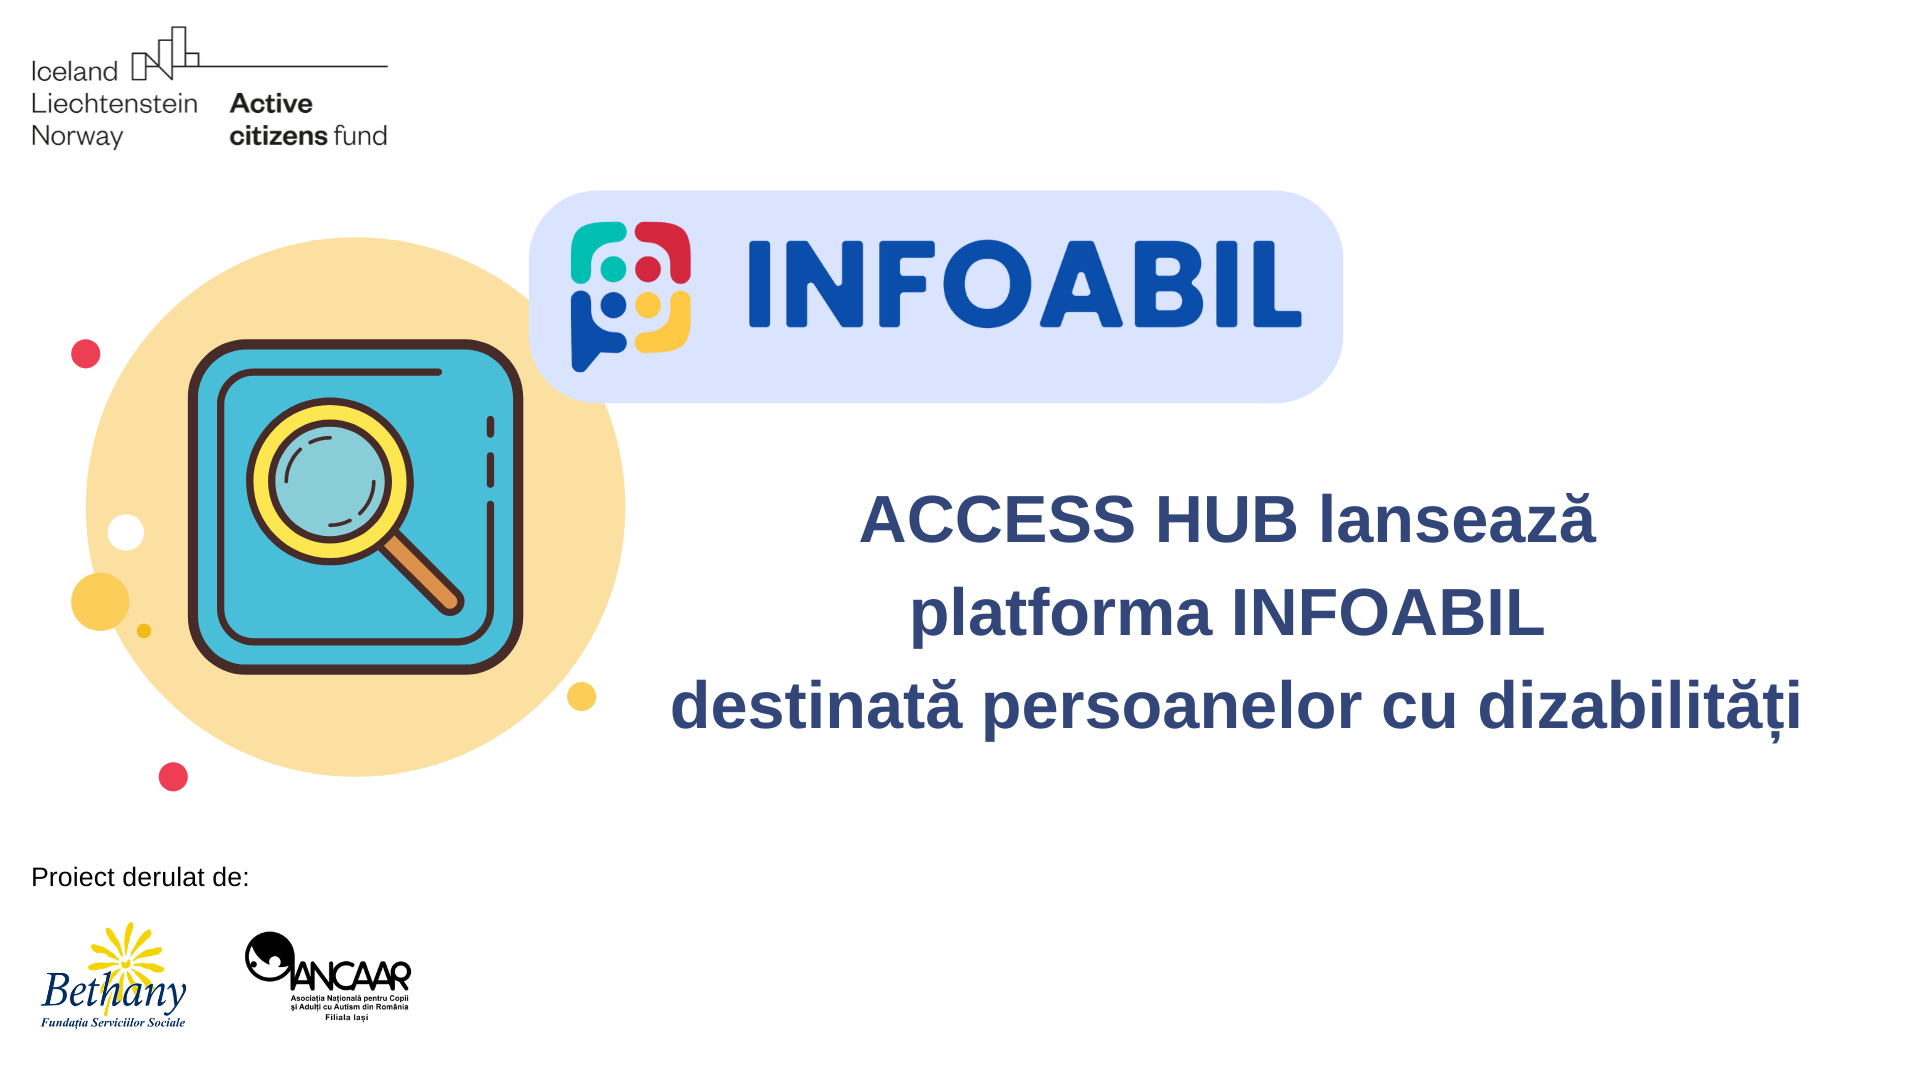 ACCESS HUB lansează platforma INFOABIL destinată persoanelor cu dizabilități 